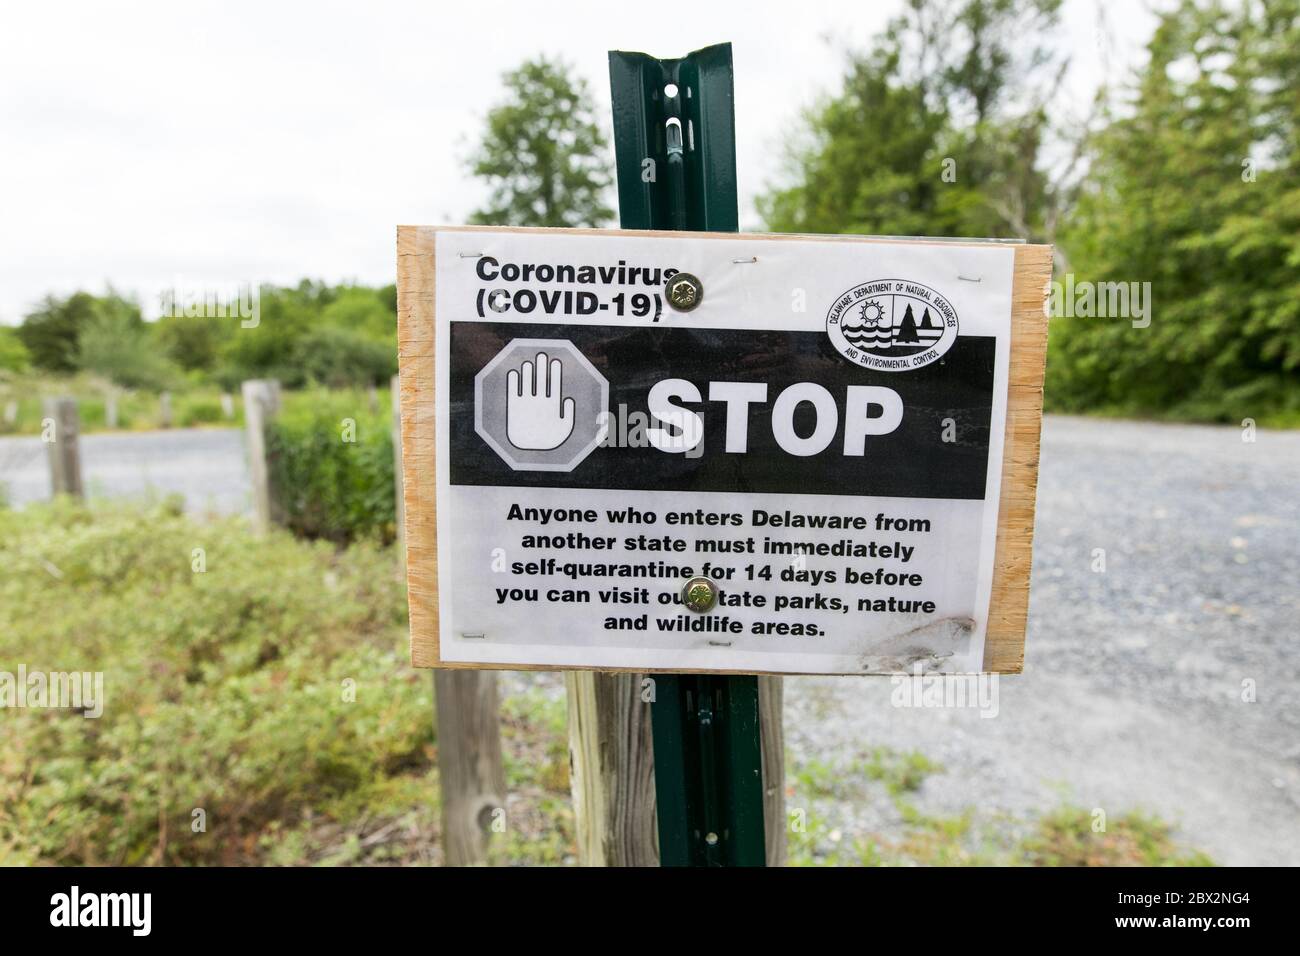 Ein Schild, das Reisende, die Delaware betreten, darüber informiert, dass sie sich wegen der Covid-19-Pandemie 14 Tage lang selbst in Quarantäne stellen müssen. Stockfoto